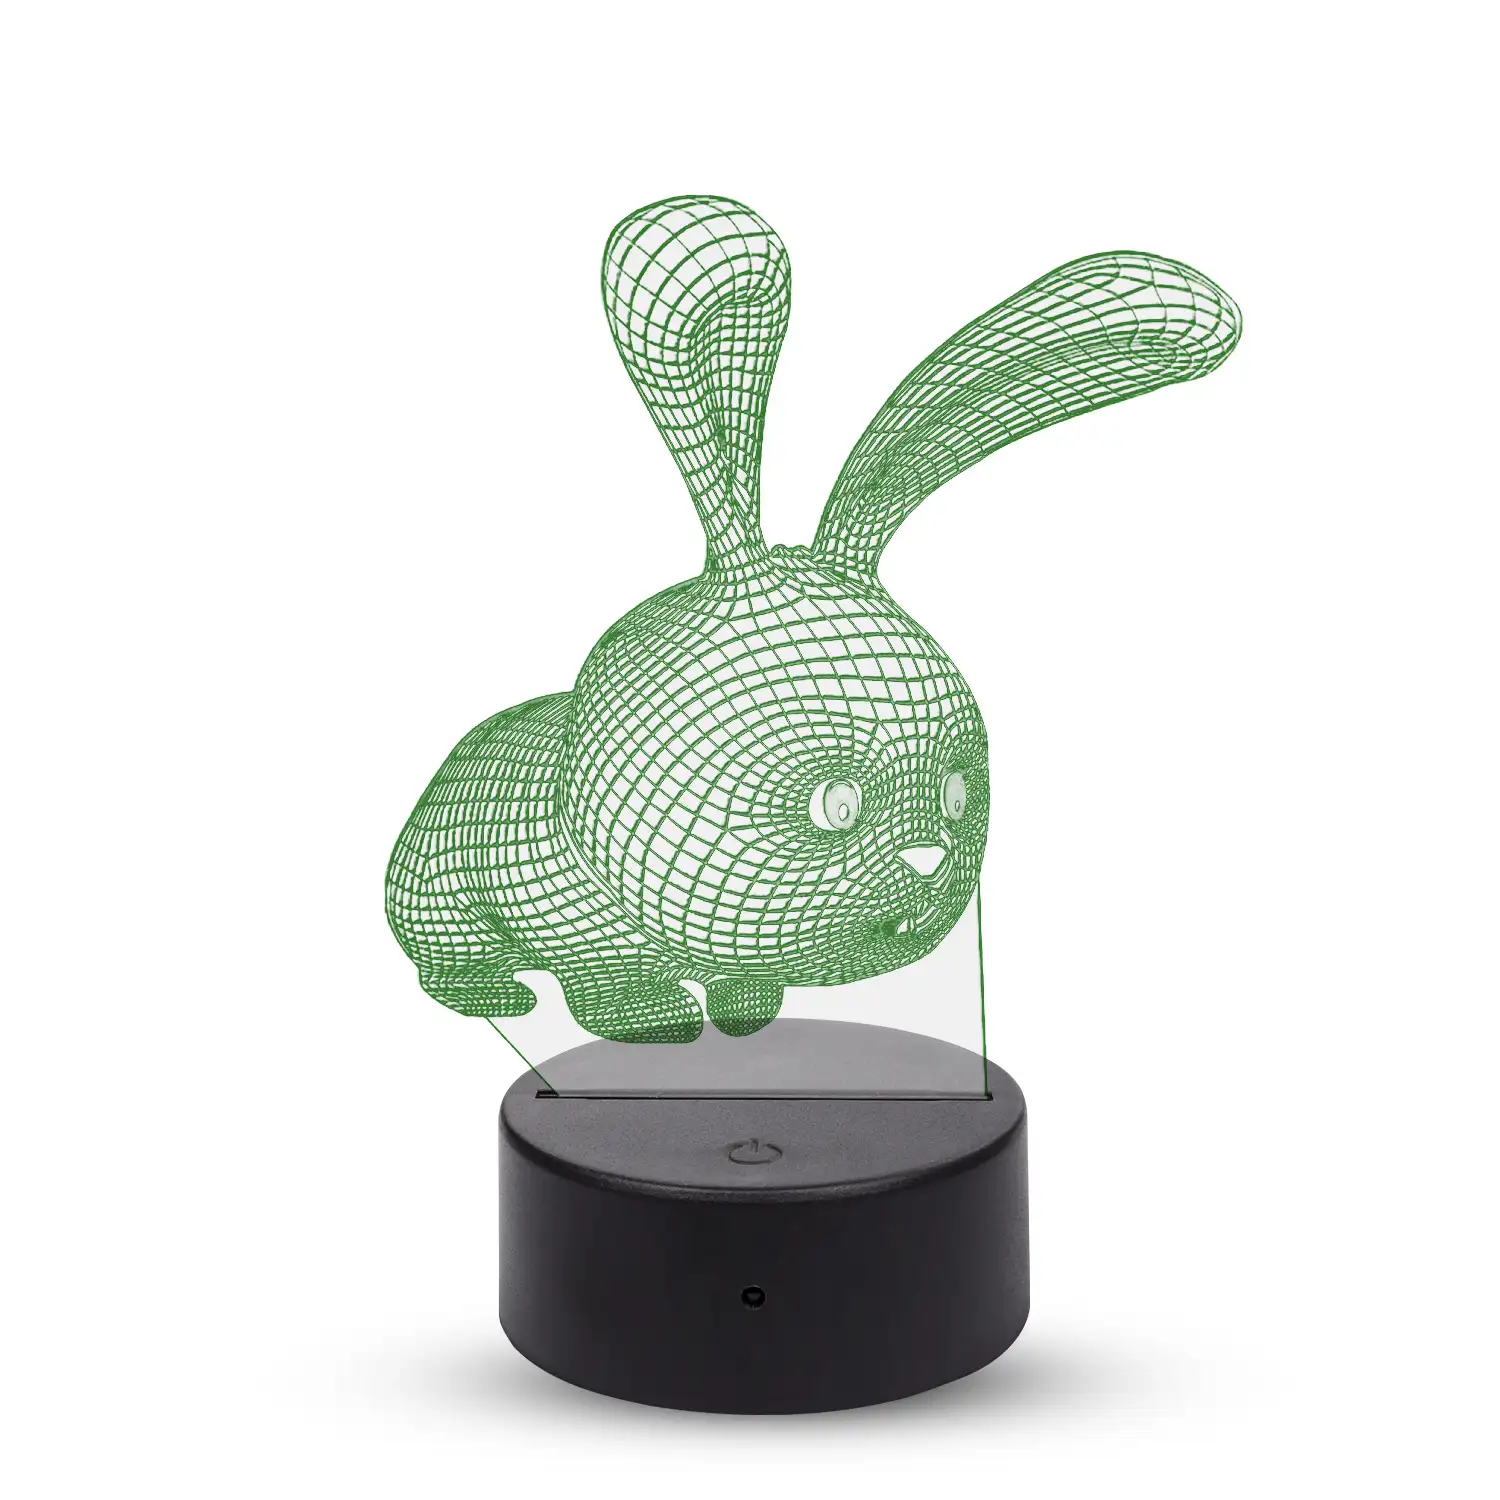 Lámpara ambiental efecto 3D, diseño Conejito. Luces RGB intercambiables, con efectos y mando a distancia.